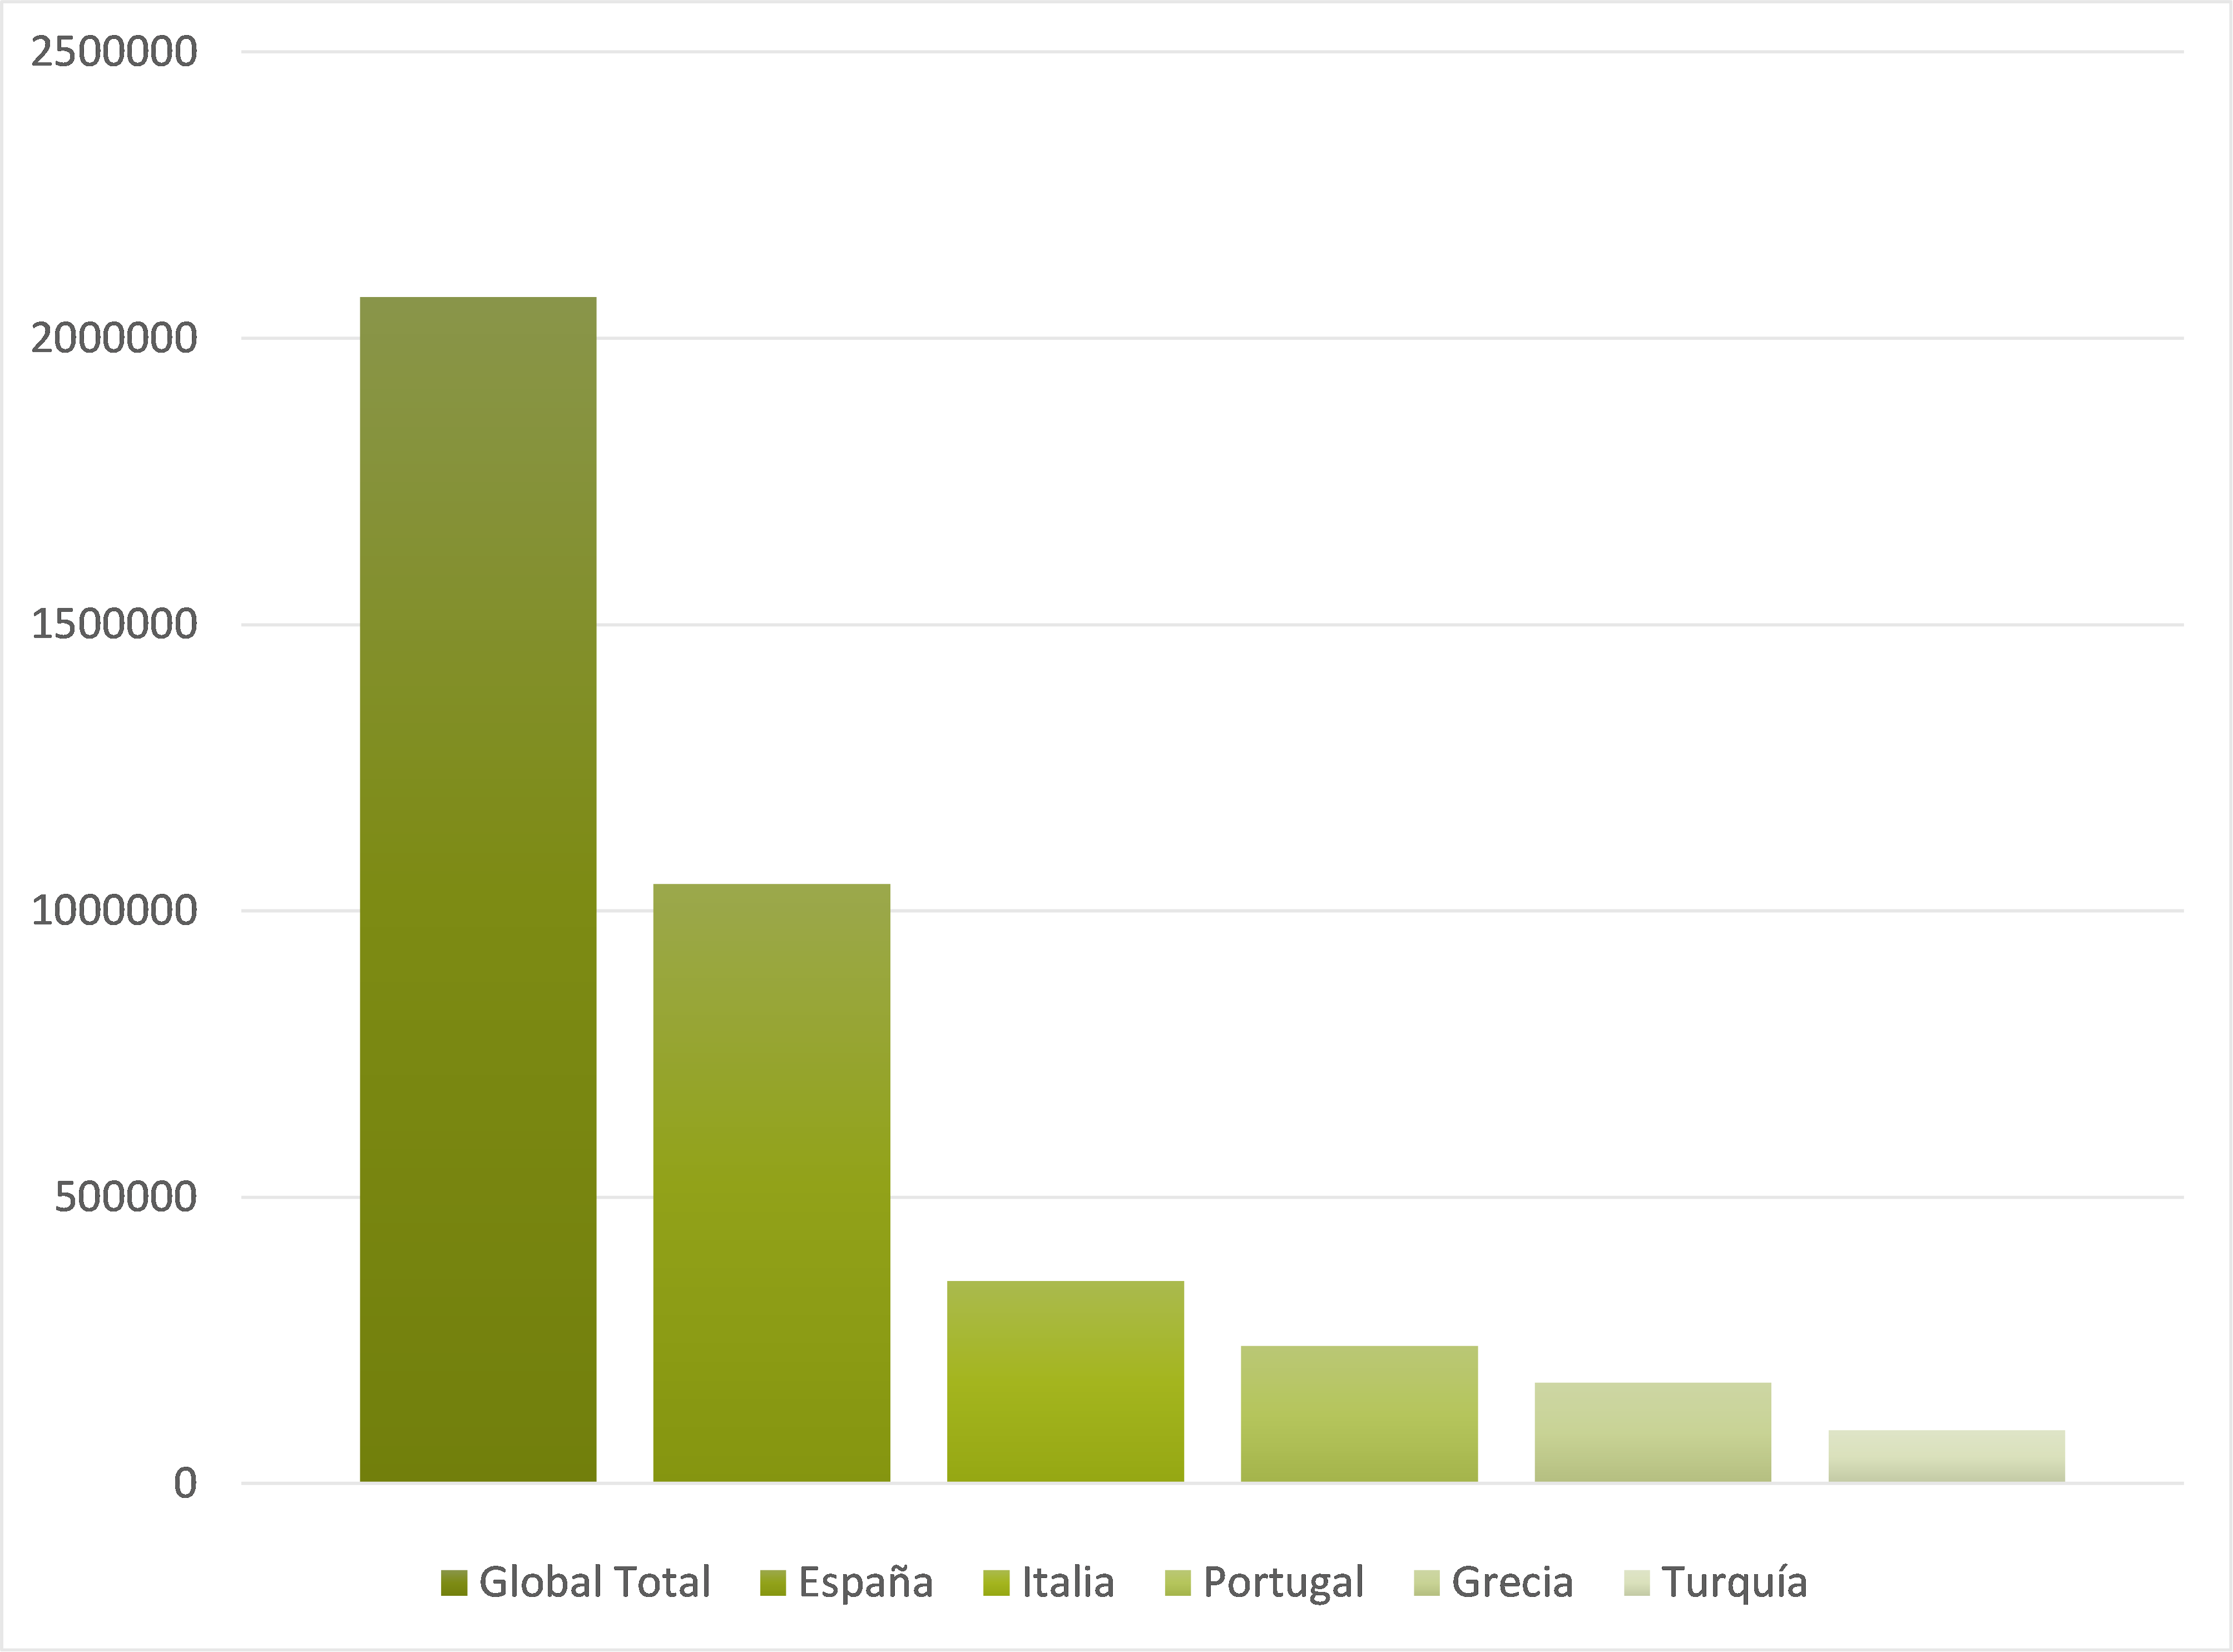 Gráfico que muestra el volumen de exportación de aceite de oliva en toneladas por país y el total global